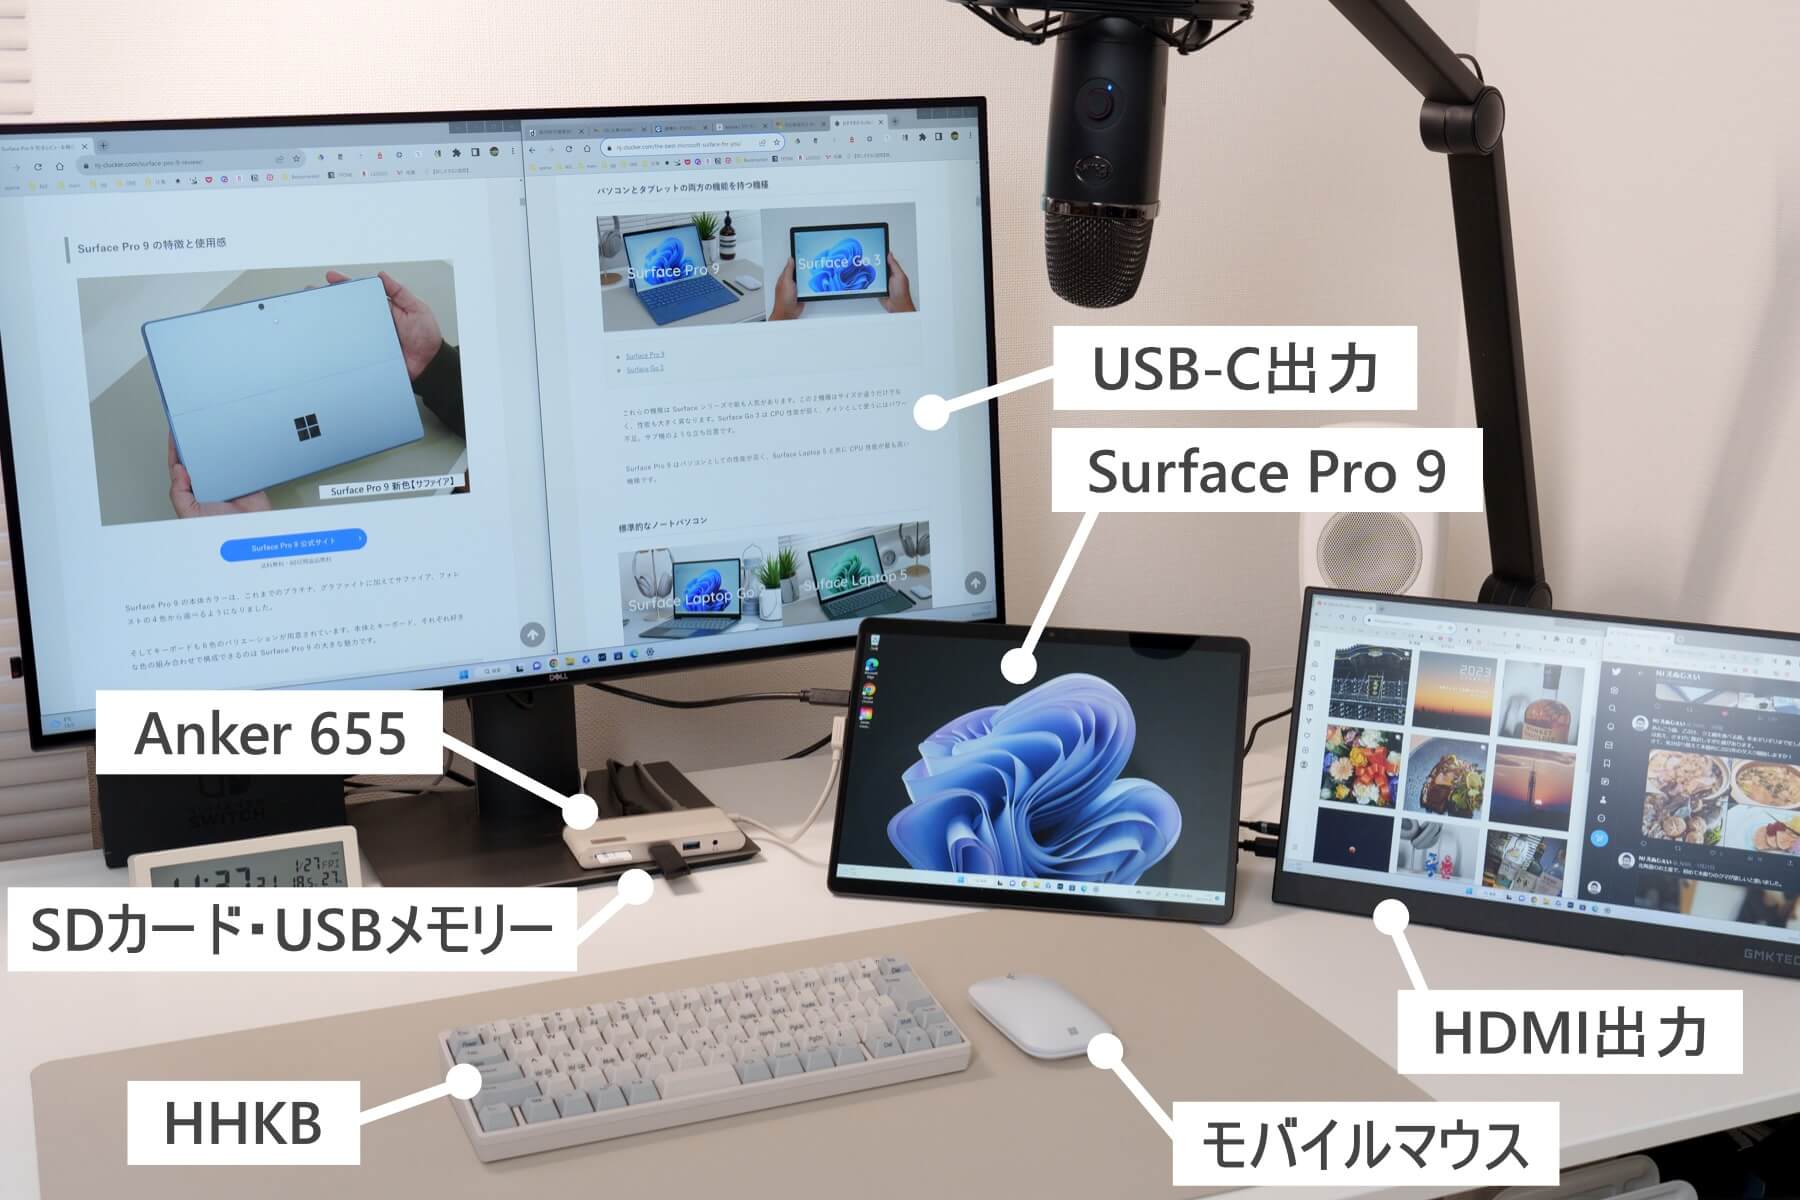 Surface Pro 9 から Anker 655 ハブ経由で各種機器を接続した様子